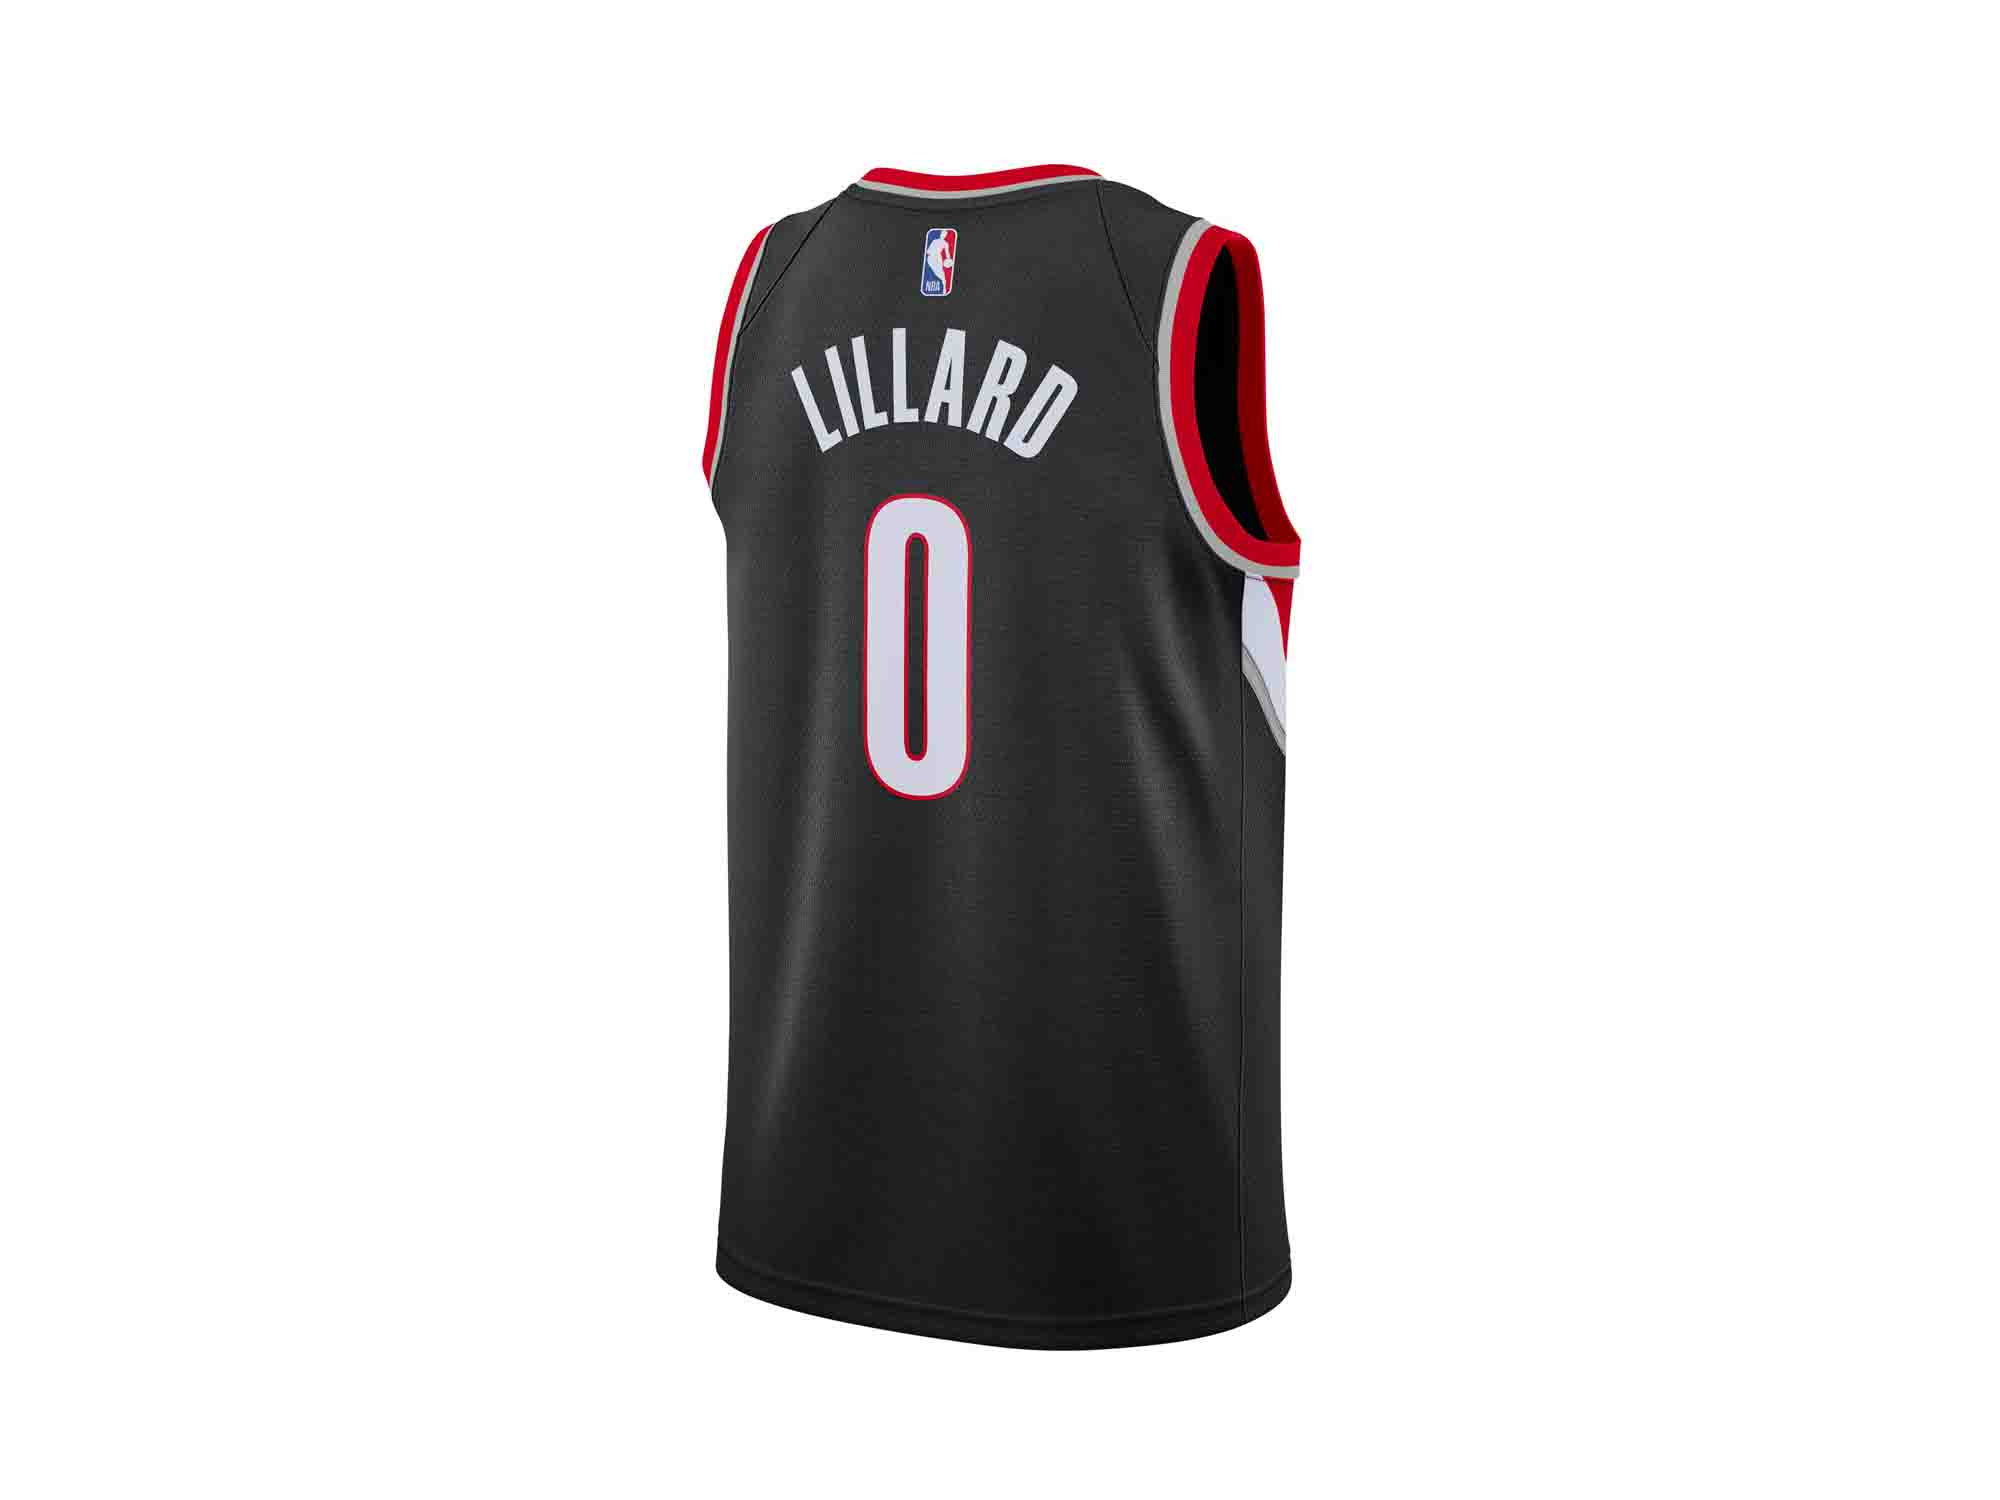 Nike Damian Lillard NBA Icon Edition 2020 Swingman Jersey 